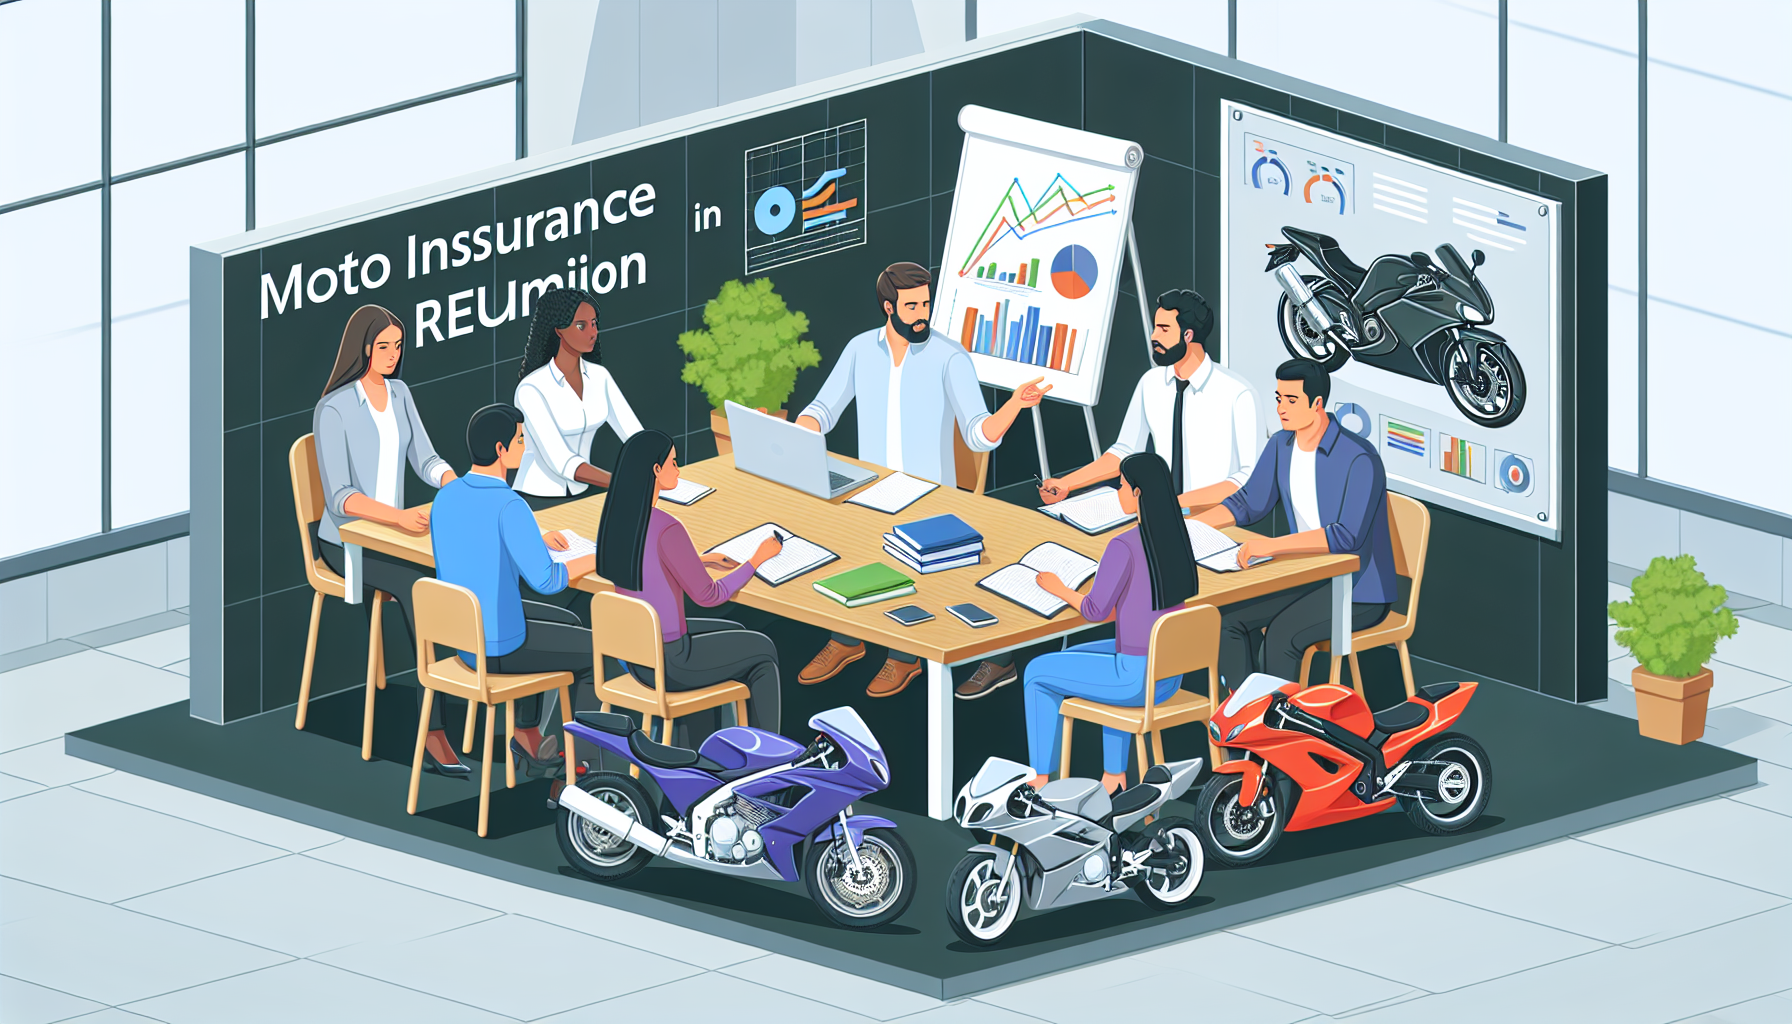 comparez les compagnies d'assurance moto à la réunion pour trouver la meilleure assurance moto à la réunion avec notre comparatif d'assurance moto à la réunion.